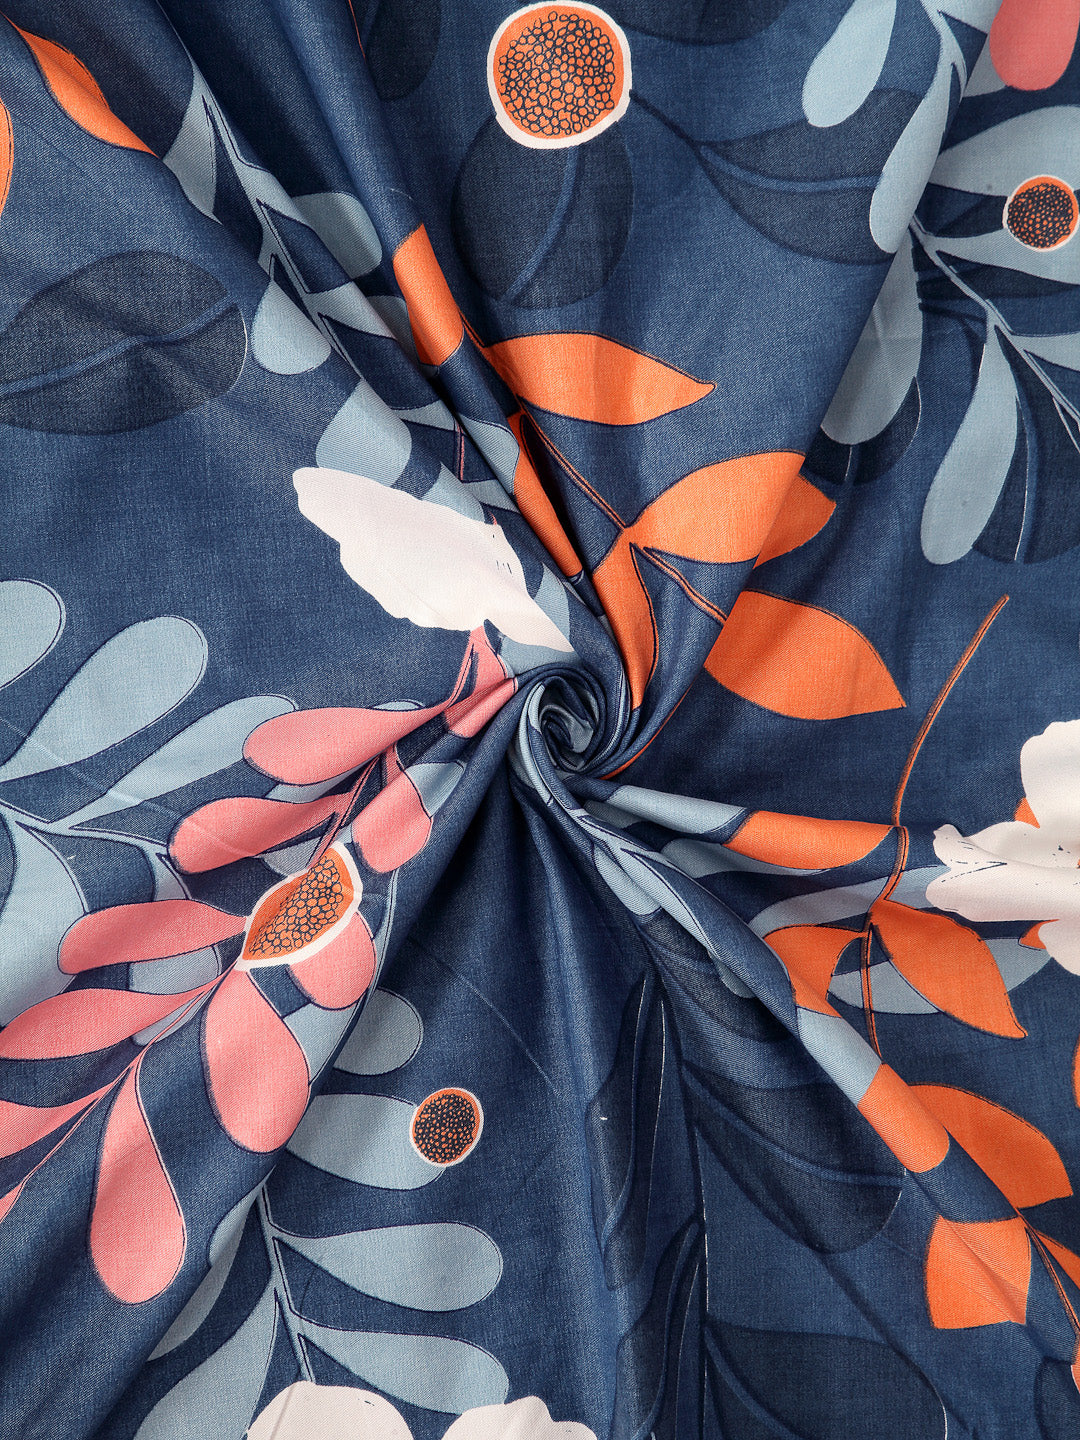 Arrabi Blue Floral TC Cotton Blend Single Size Bedsheet with 1 Pillow Cover (215 x 150 cm)